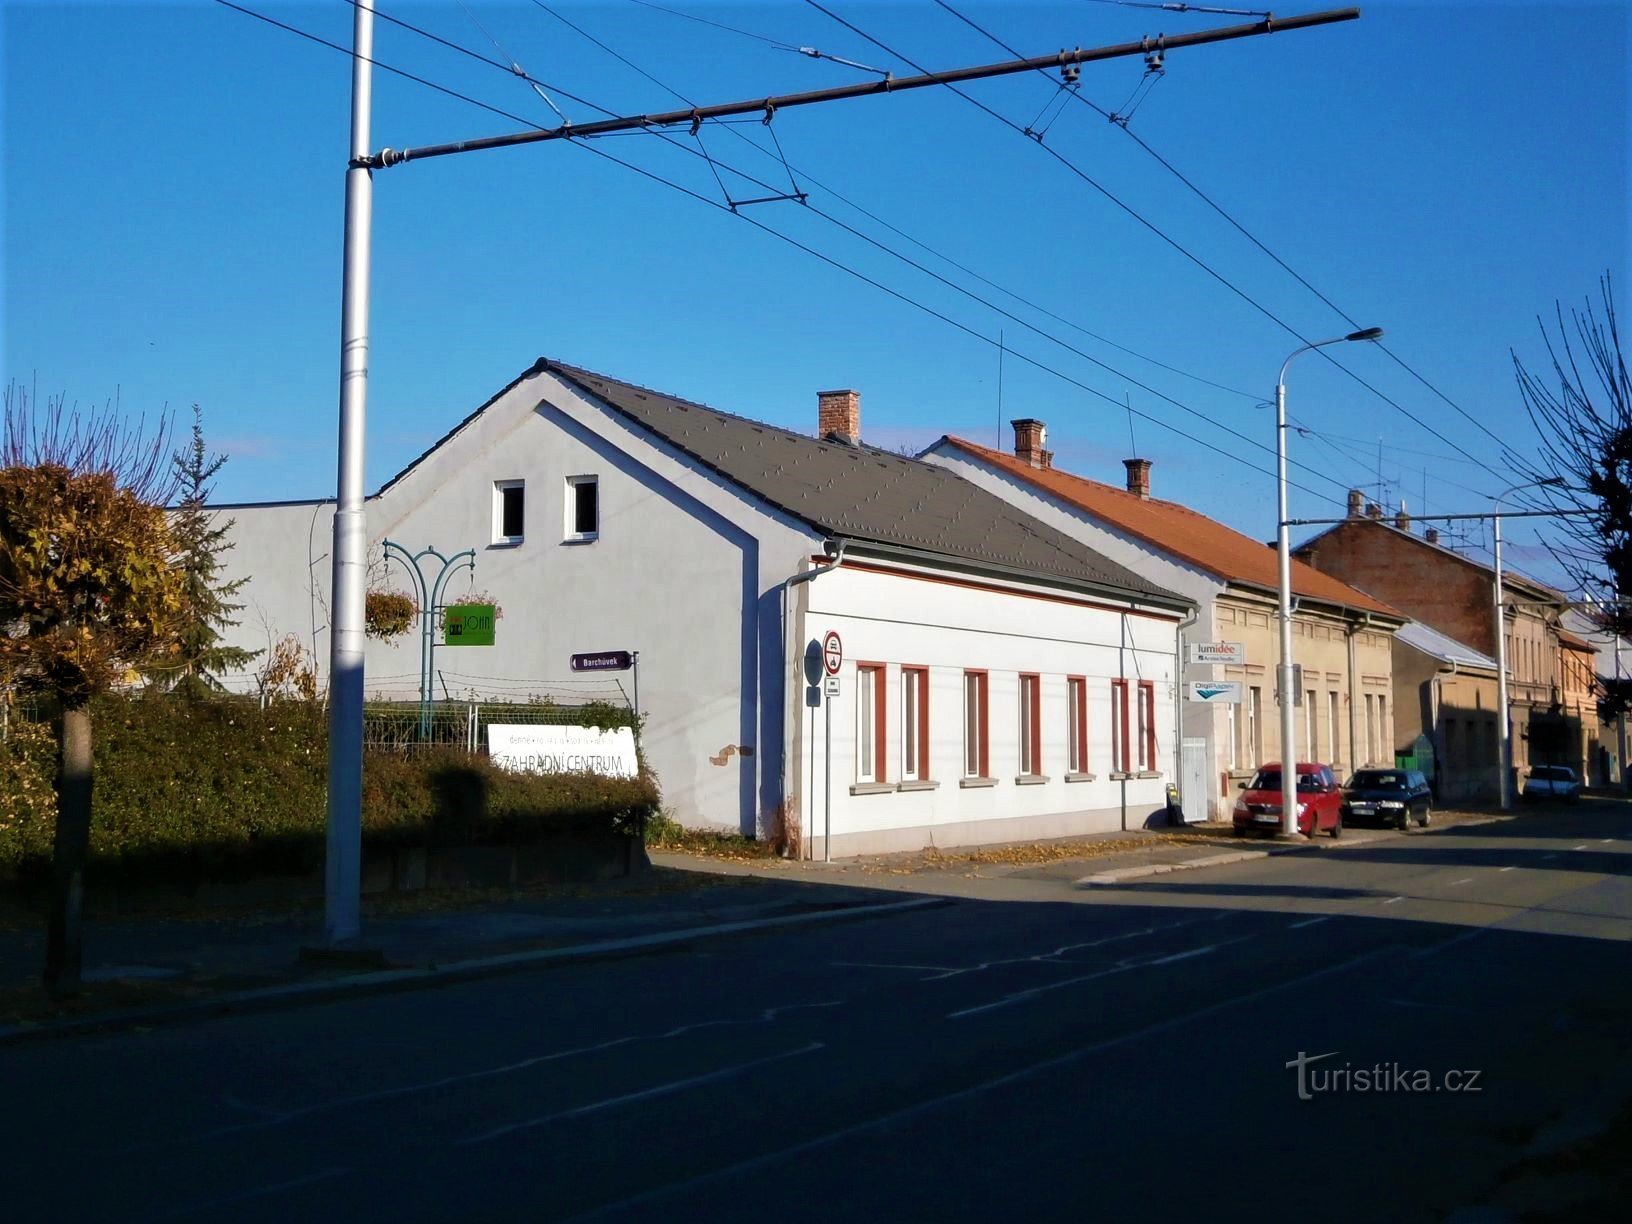 Toegang tot Barchůvk en huis nr. 142 (Hradec Králové, 13.11.2016/XNUMX/XNUMX)